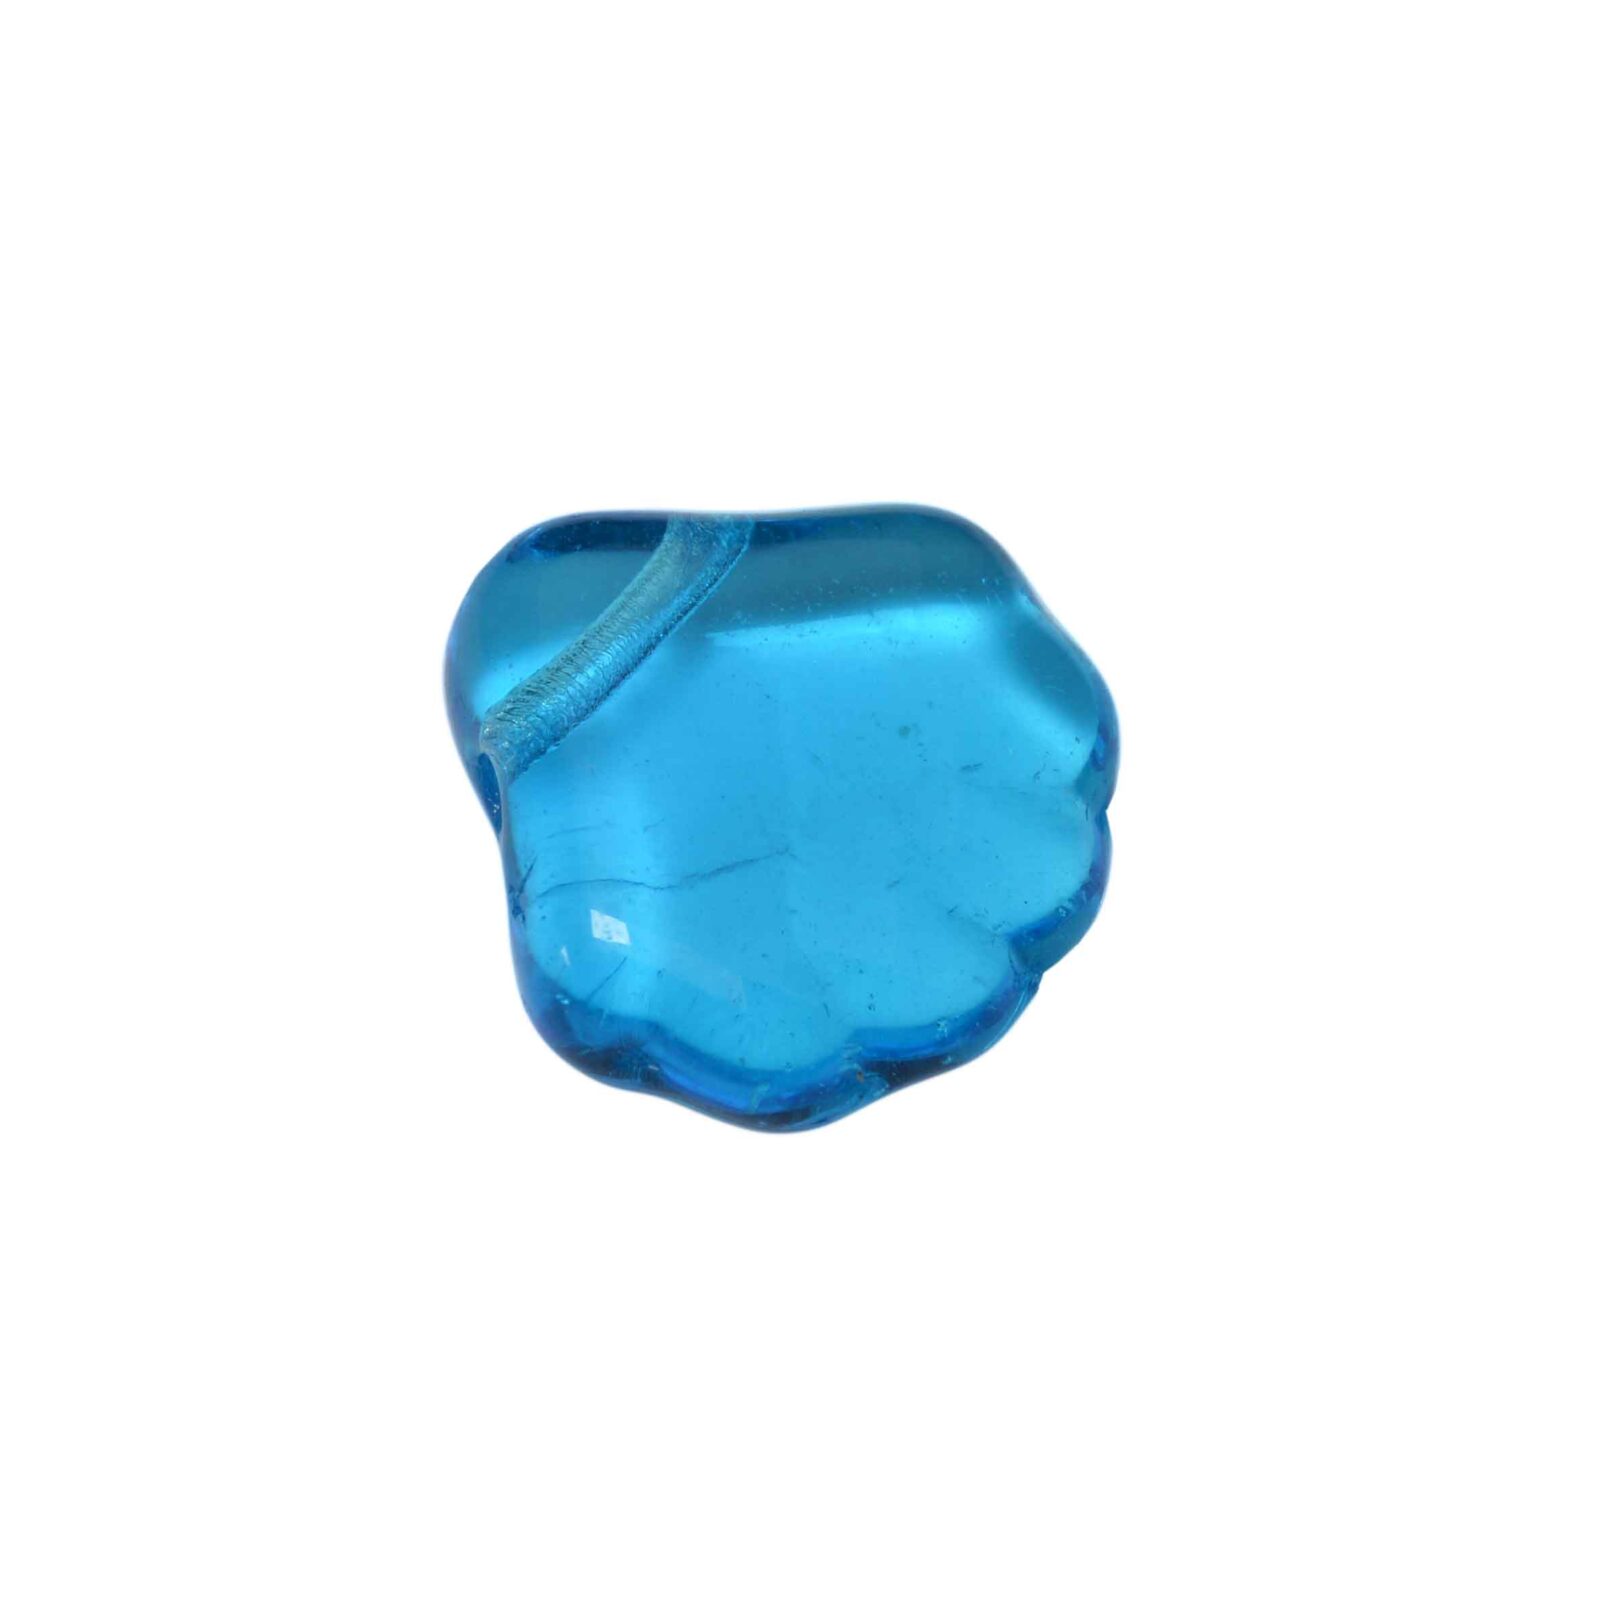 Blauwe doorzichtige glaskraal in schelpvorm